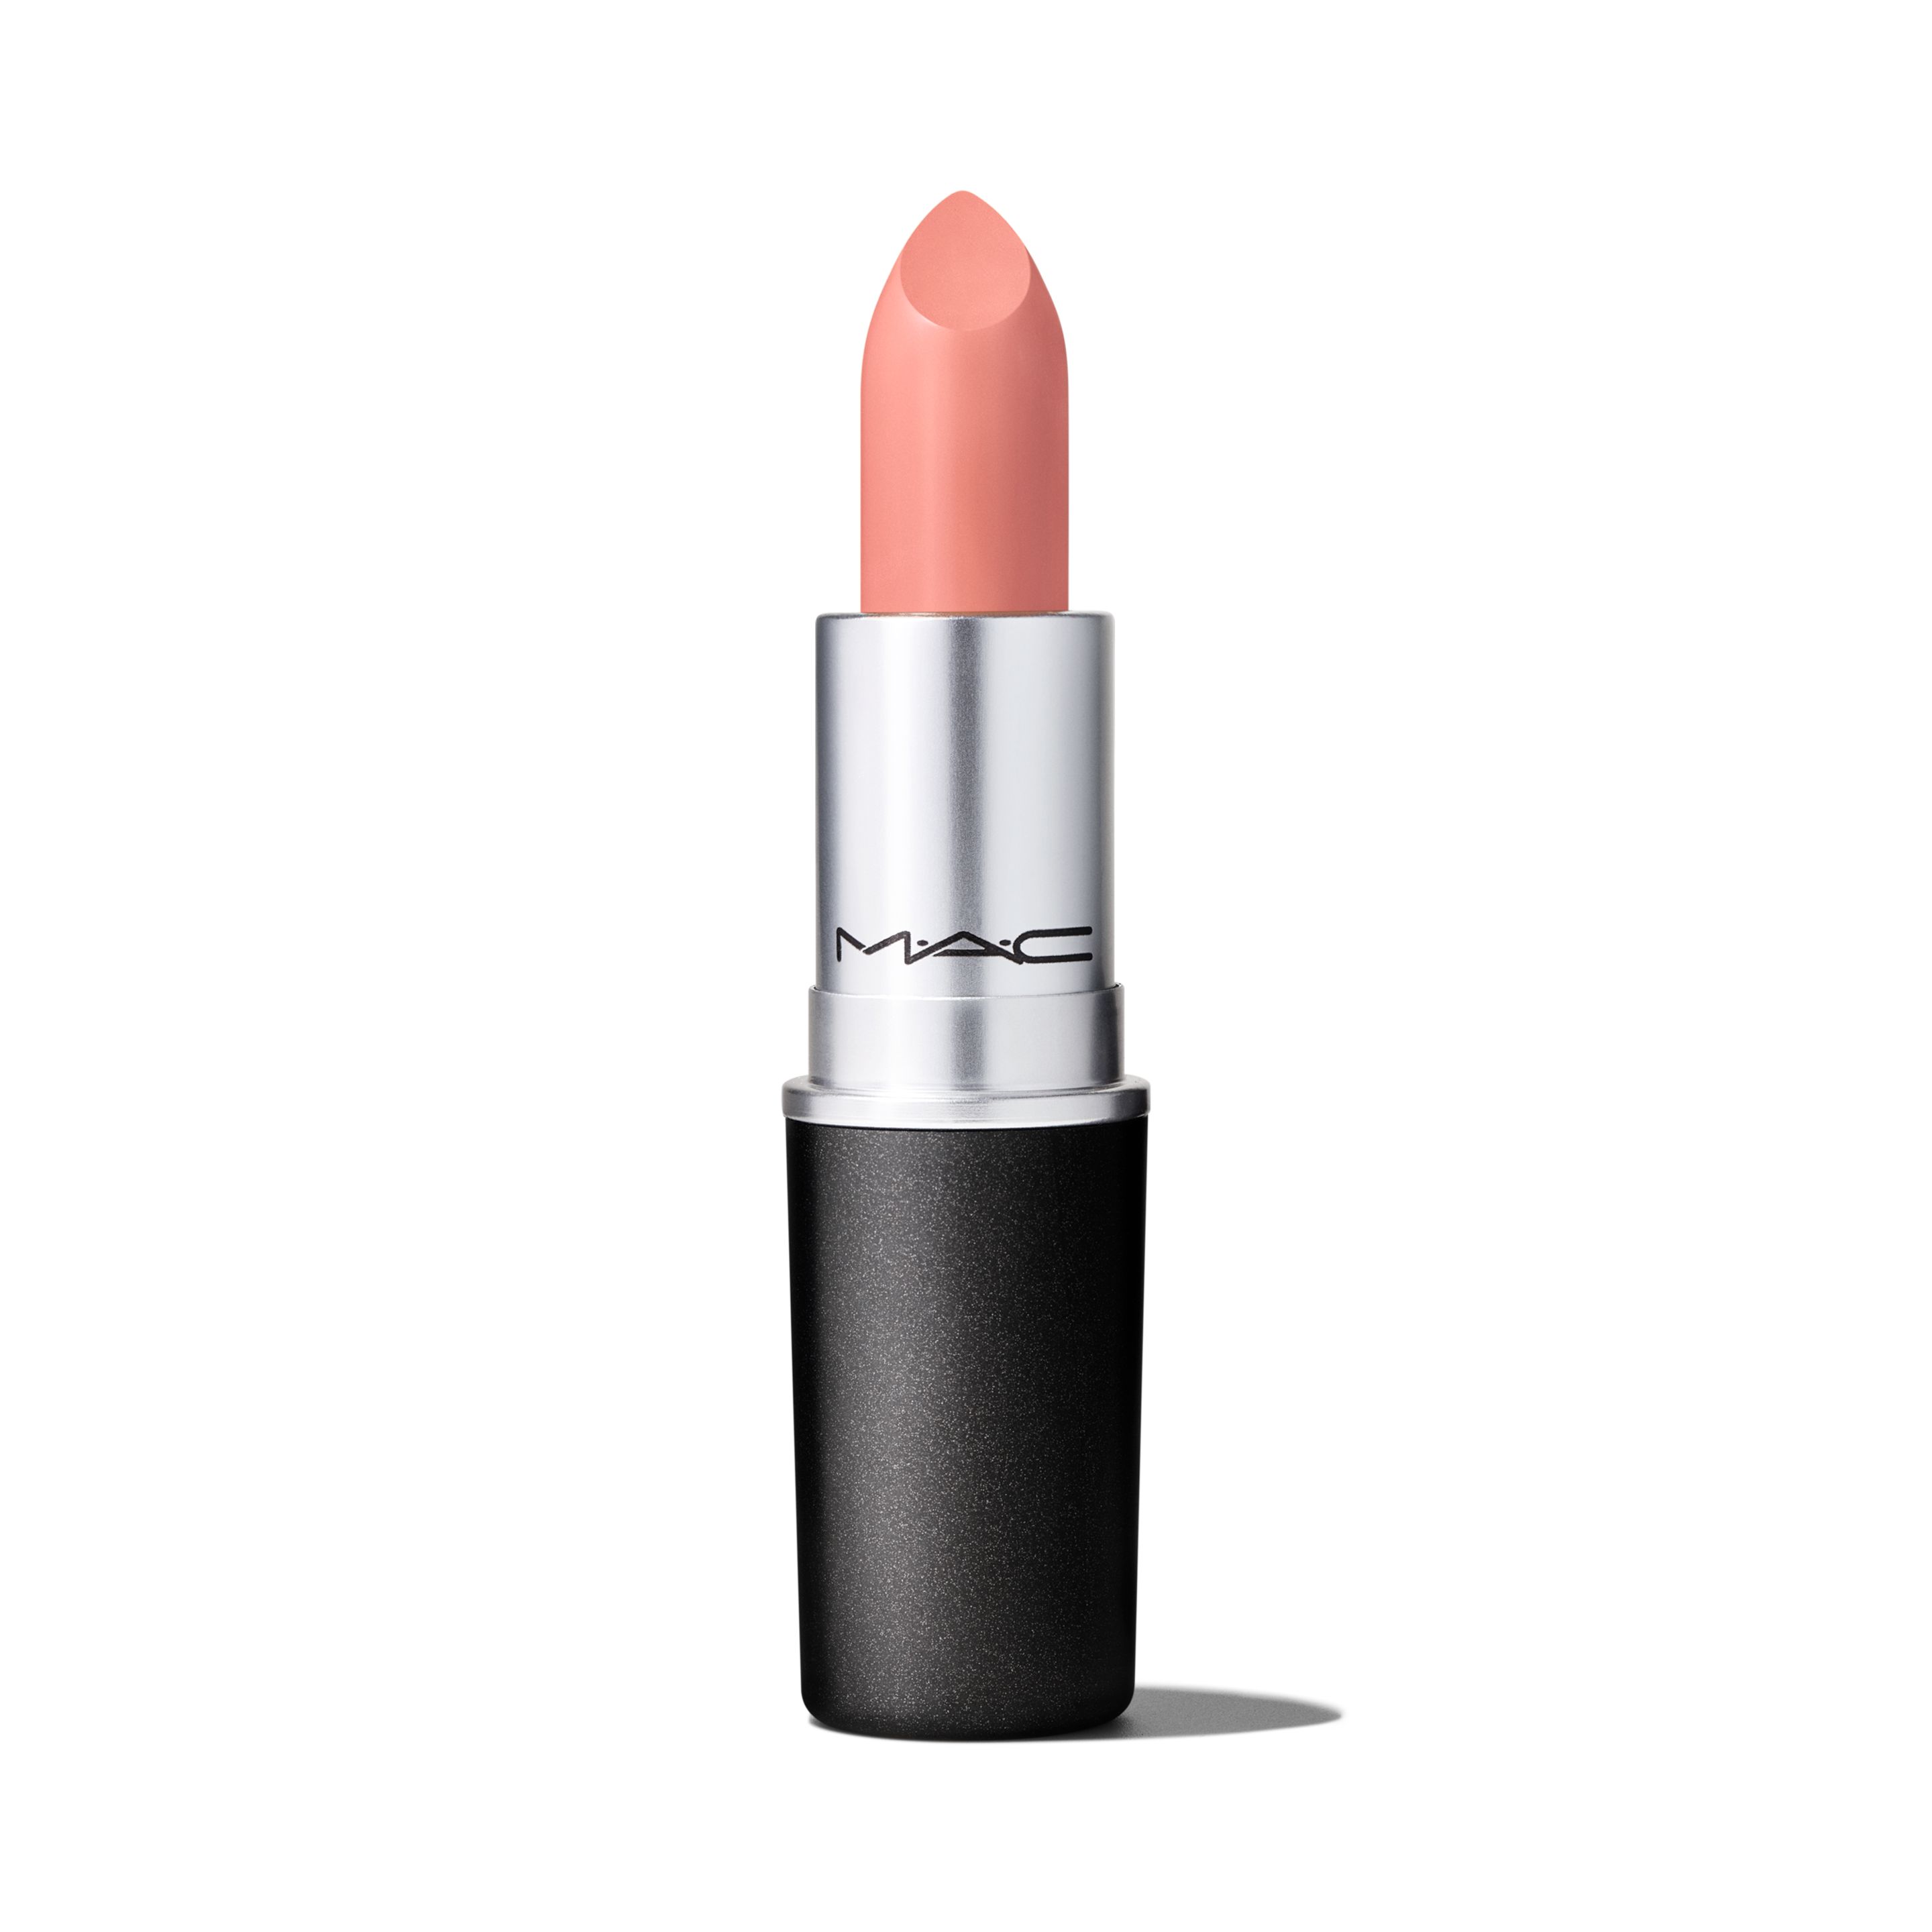 Помада для губ MAC Cosmetics Satin Lipstick кремовая, тон Myth, 3 г помада для губ mac cosmetics satin lipstick кремовая тон twig 3 г